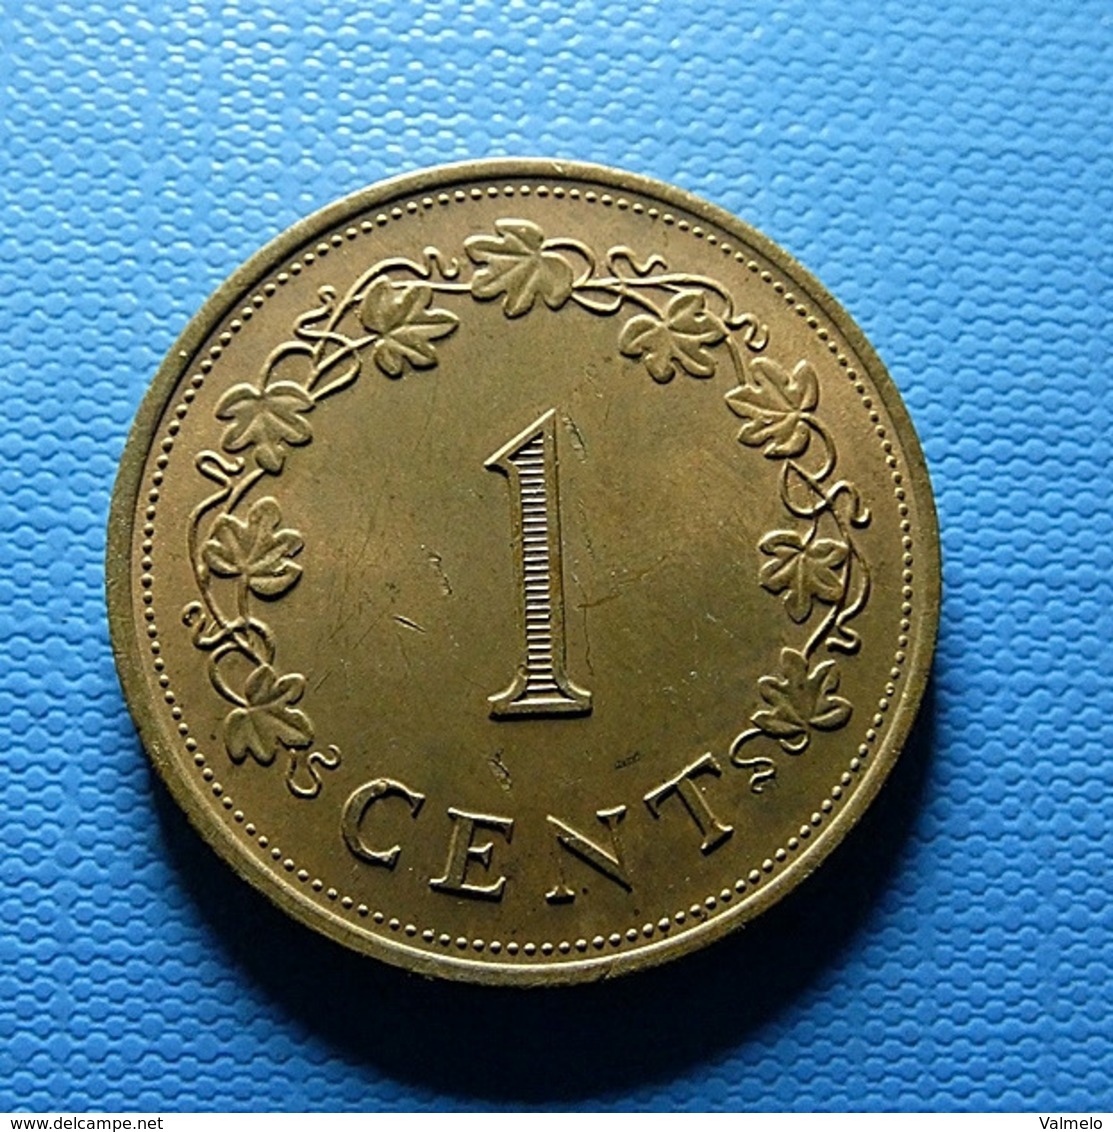 Malta 1 Cent 1977 - Malta